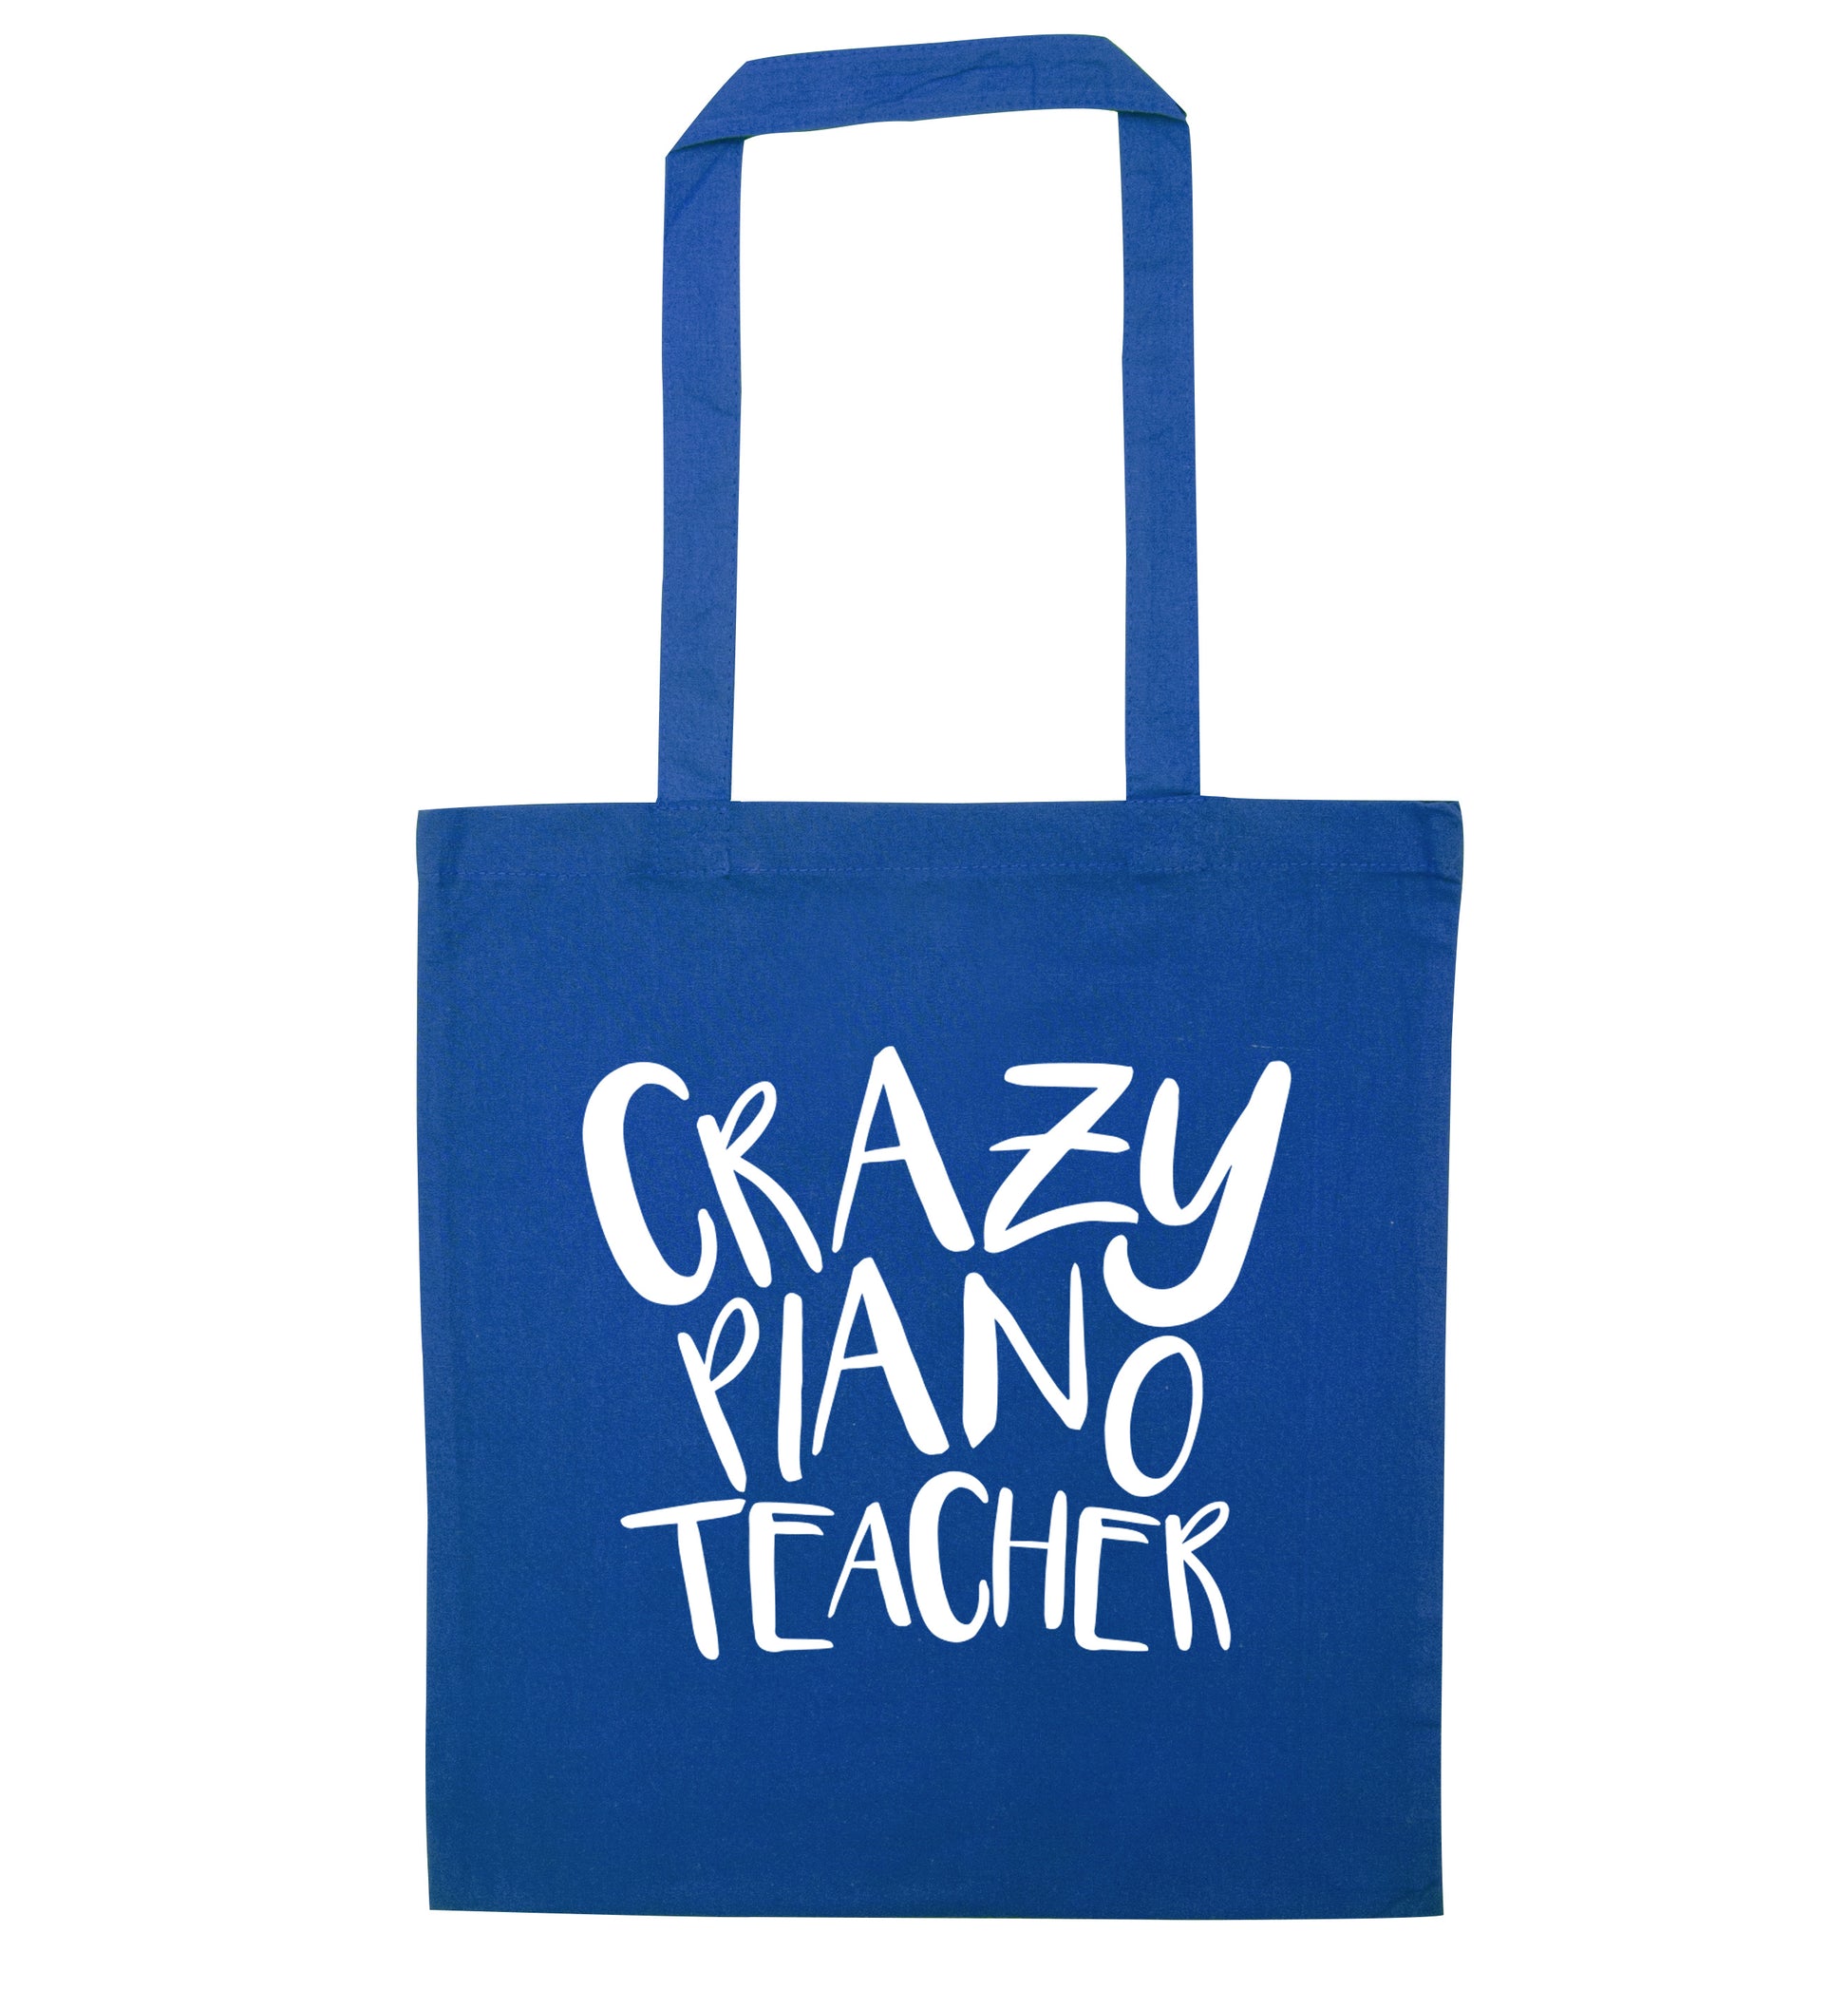 Crazy piano teacher blue tote bag